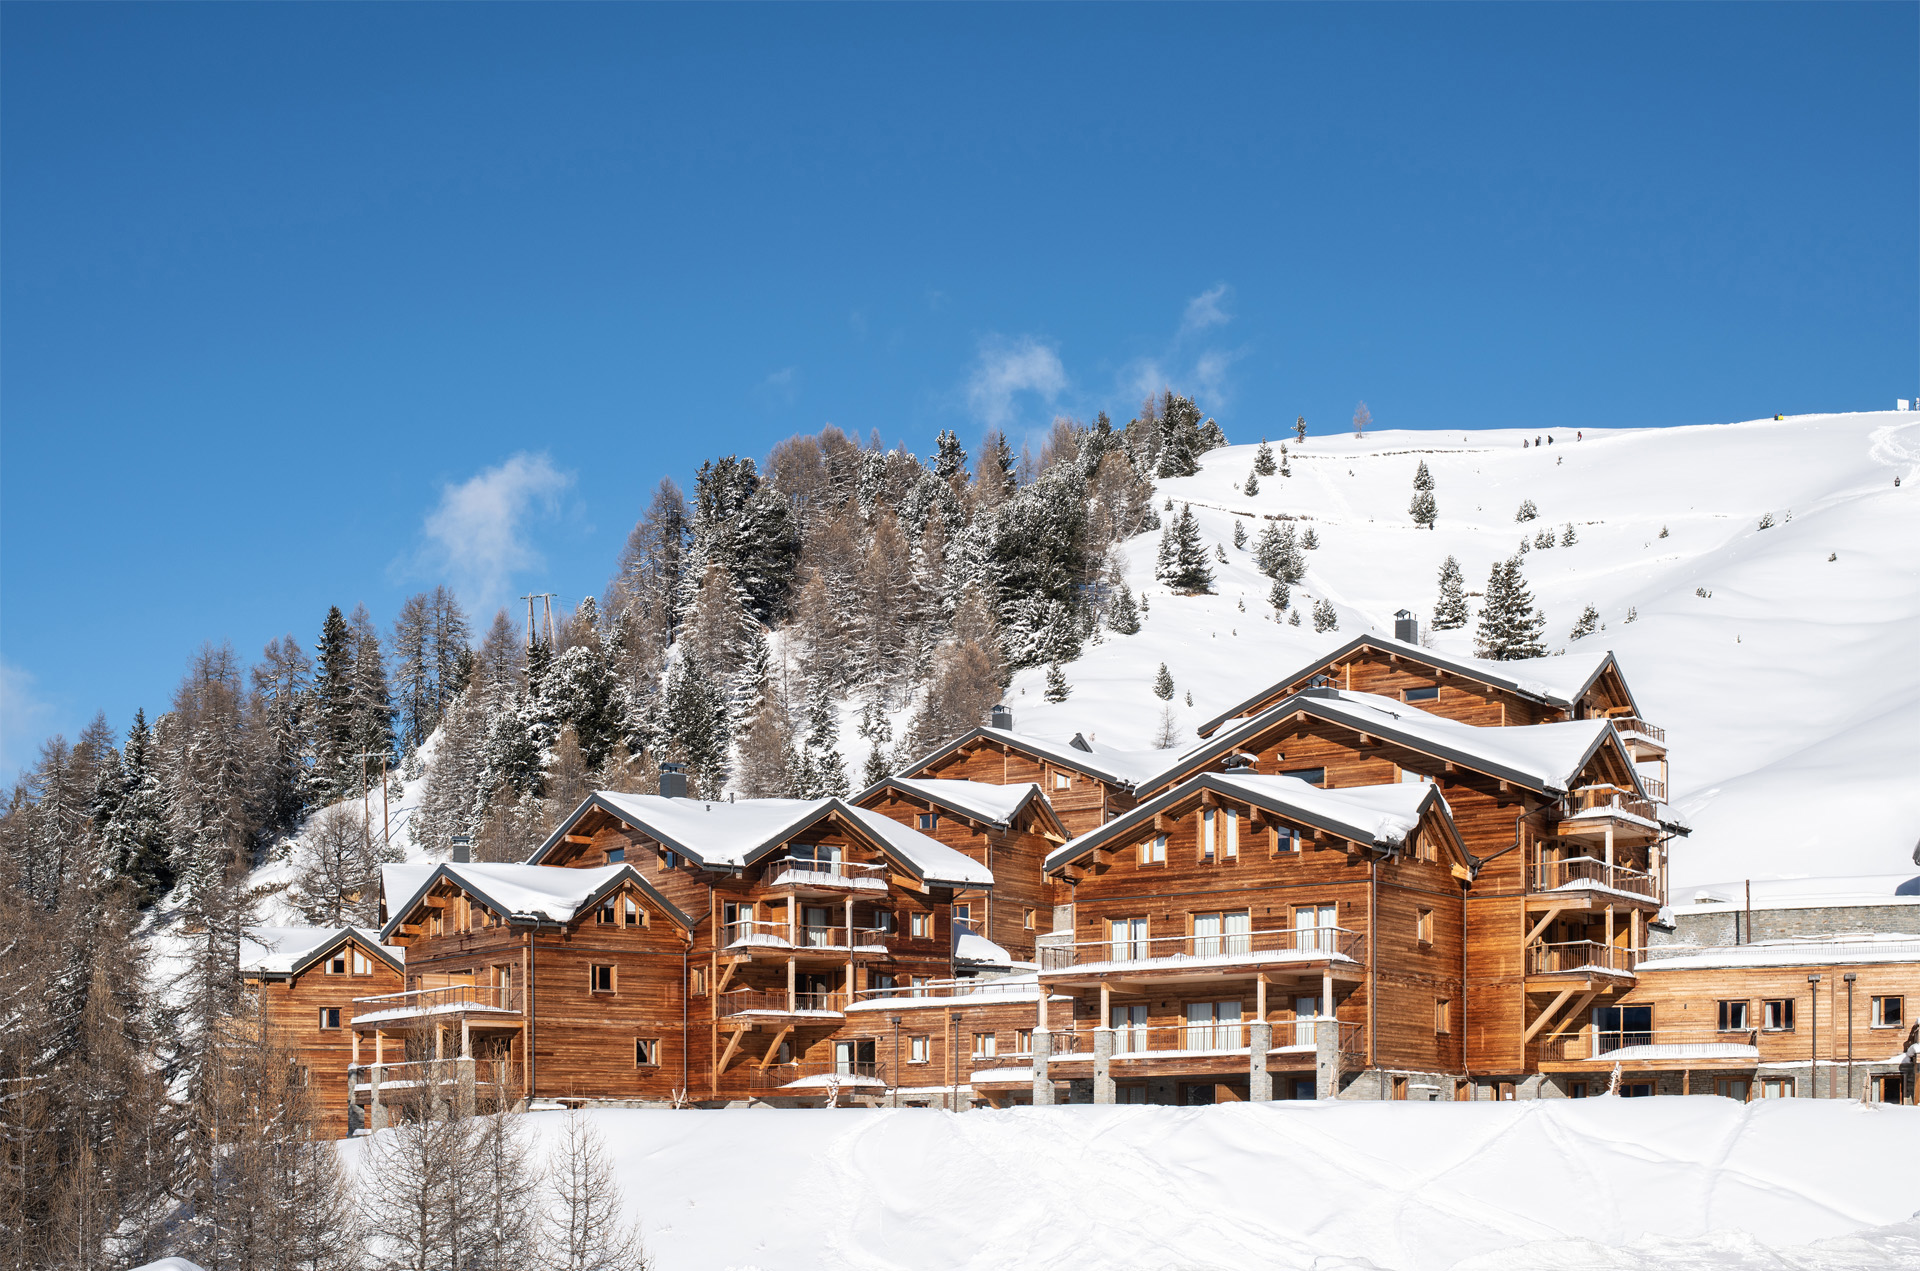 France - Alpes et Savoie - La Plagne - Plagne Soleil - Résidence CGH White Pearl Lodge & Spa